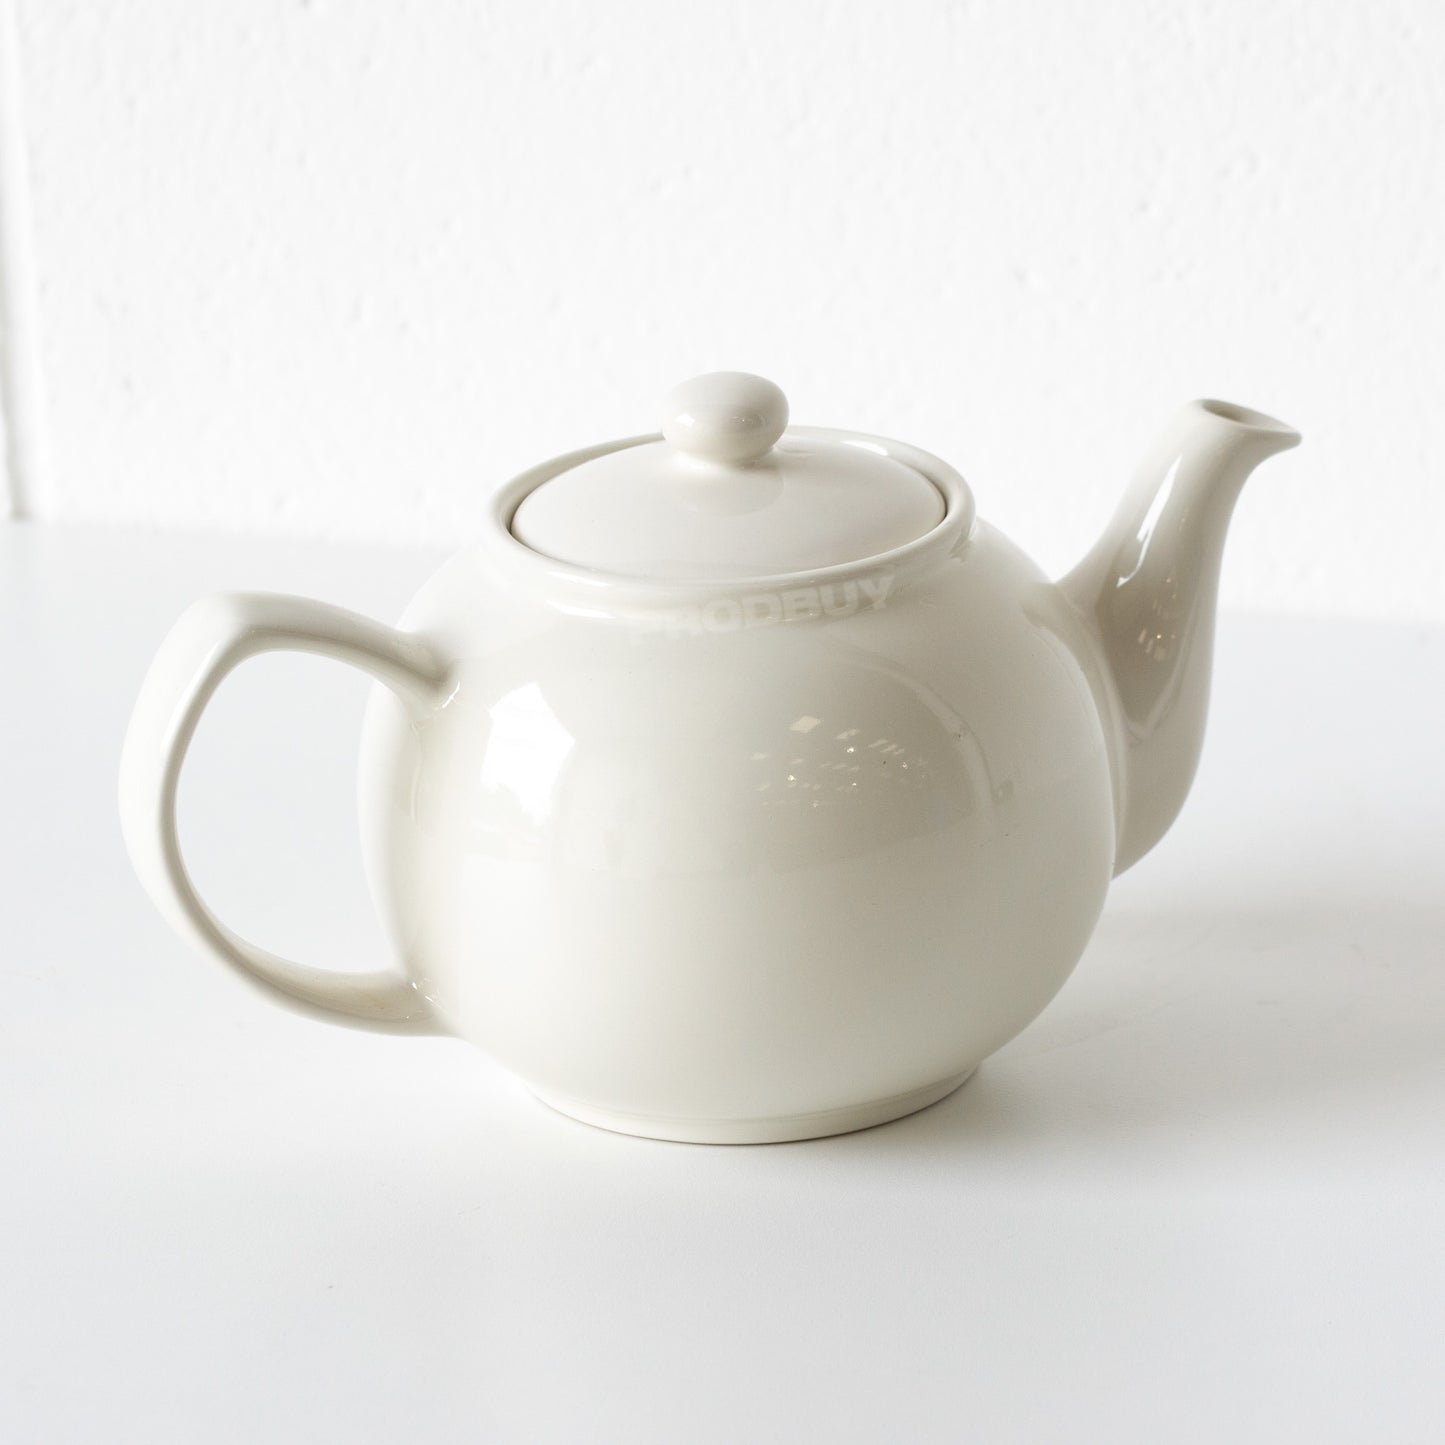 Mason Cash 1 Litre Ceramic Teapot with 'Fine Blend Tea' Vintage Design